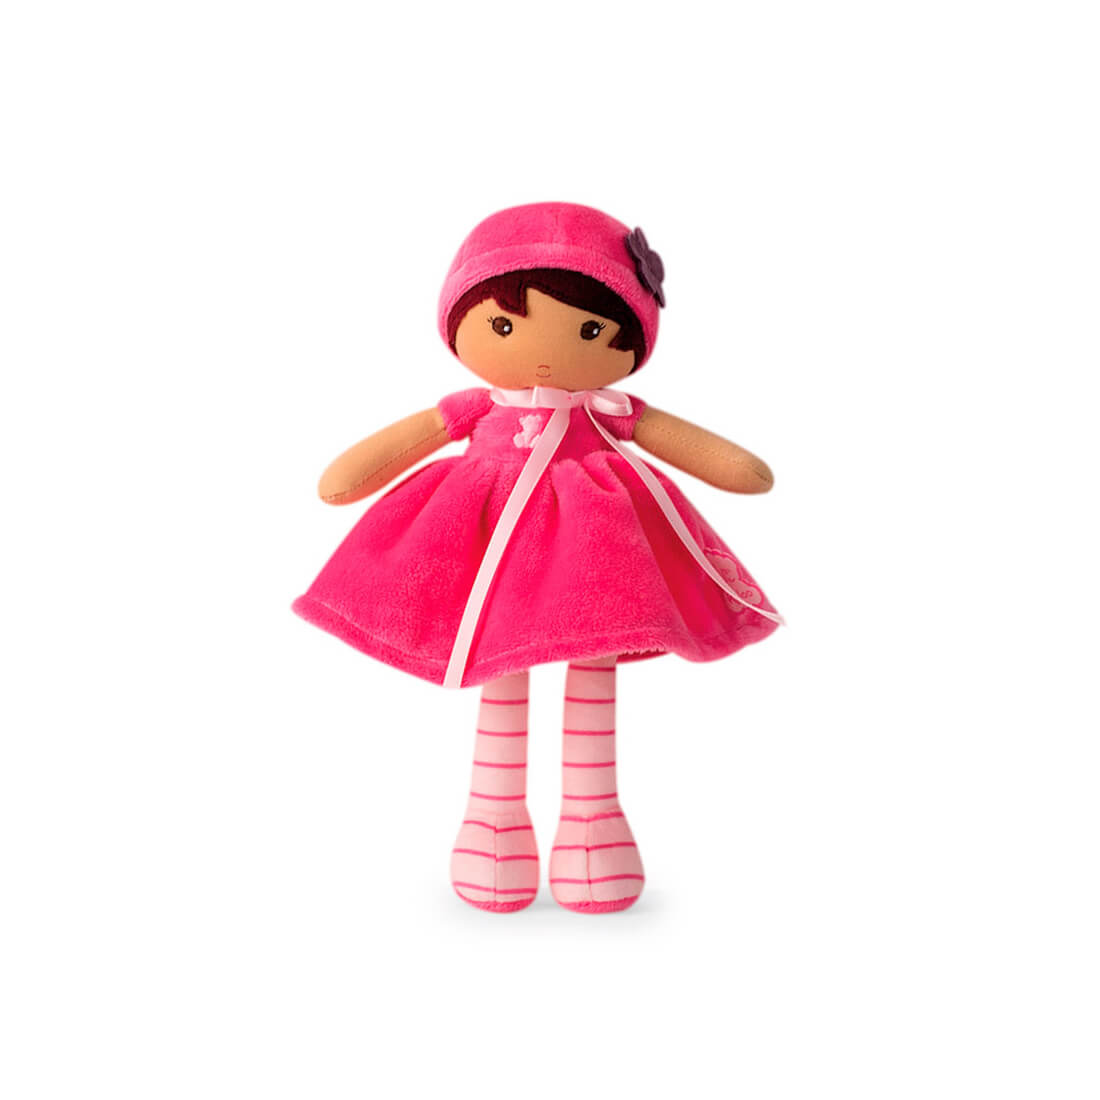 Текстильная кукла Kaloo "Emma", в розовом платье, серия "Tendresse de Kaloo", 25 см - фото №1